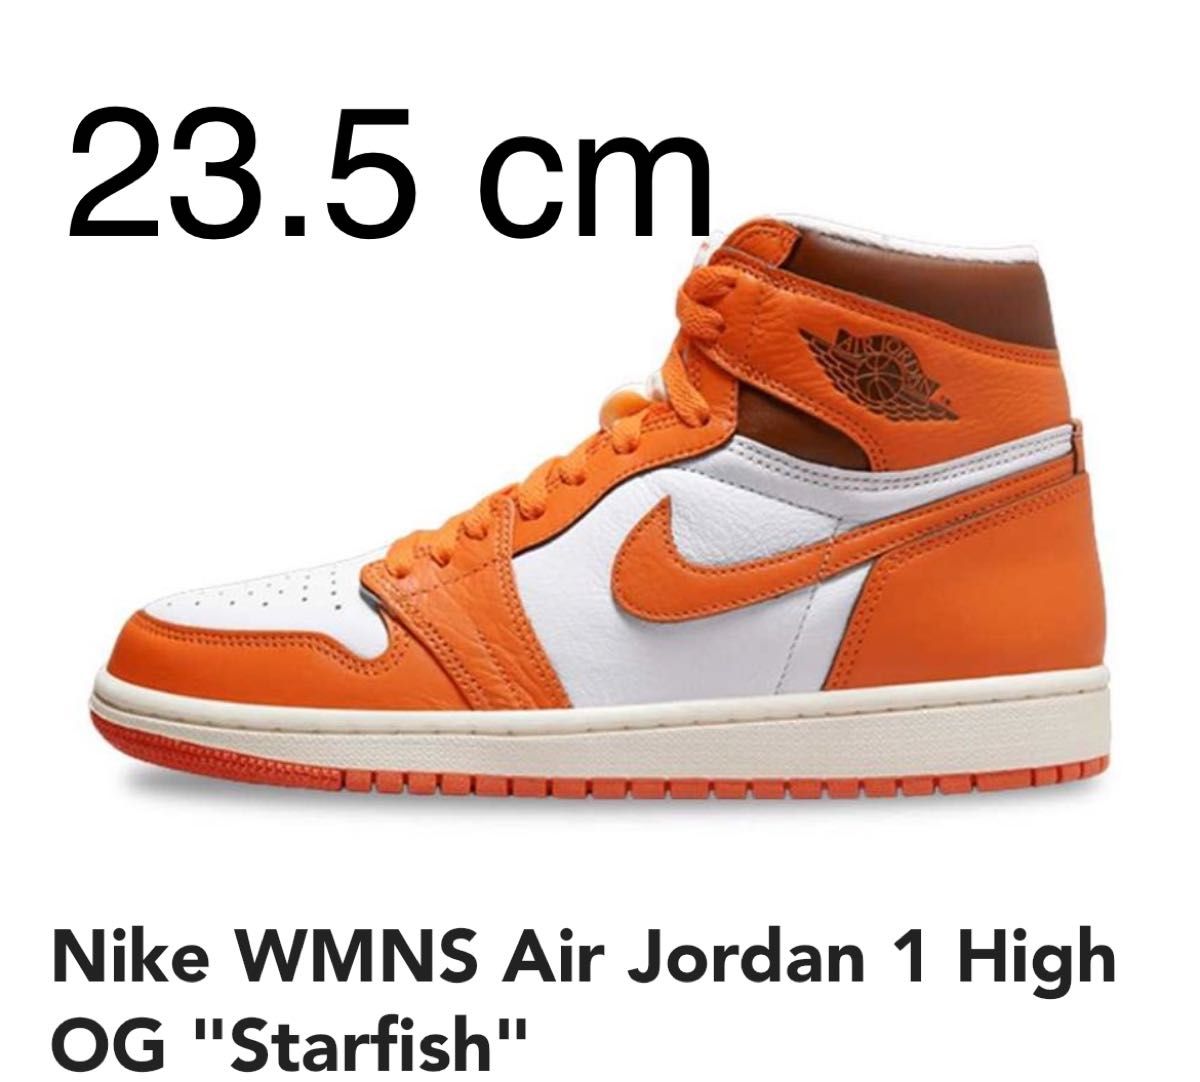 Nike WMNS Air Jordan 1 High OG "Starfish"  